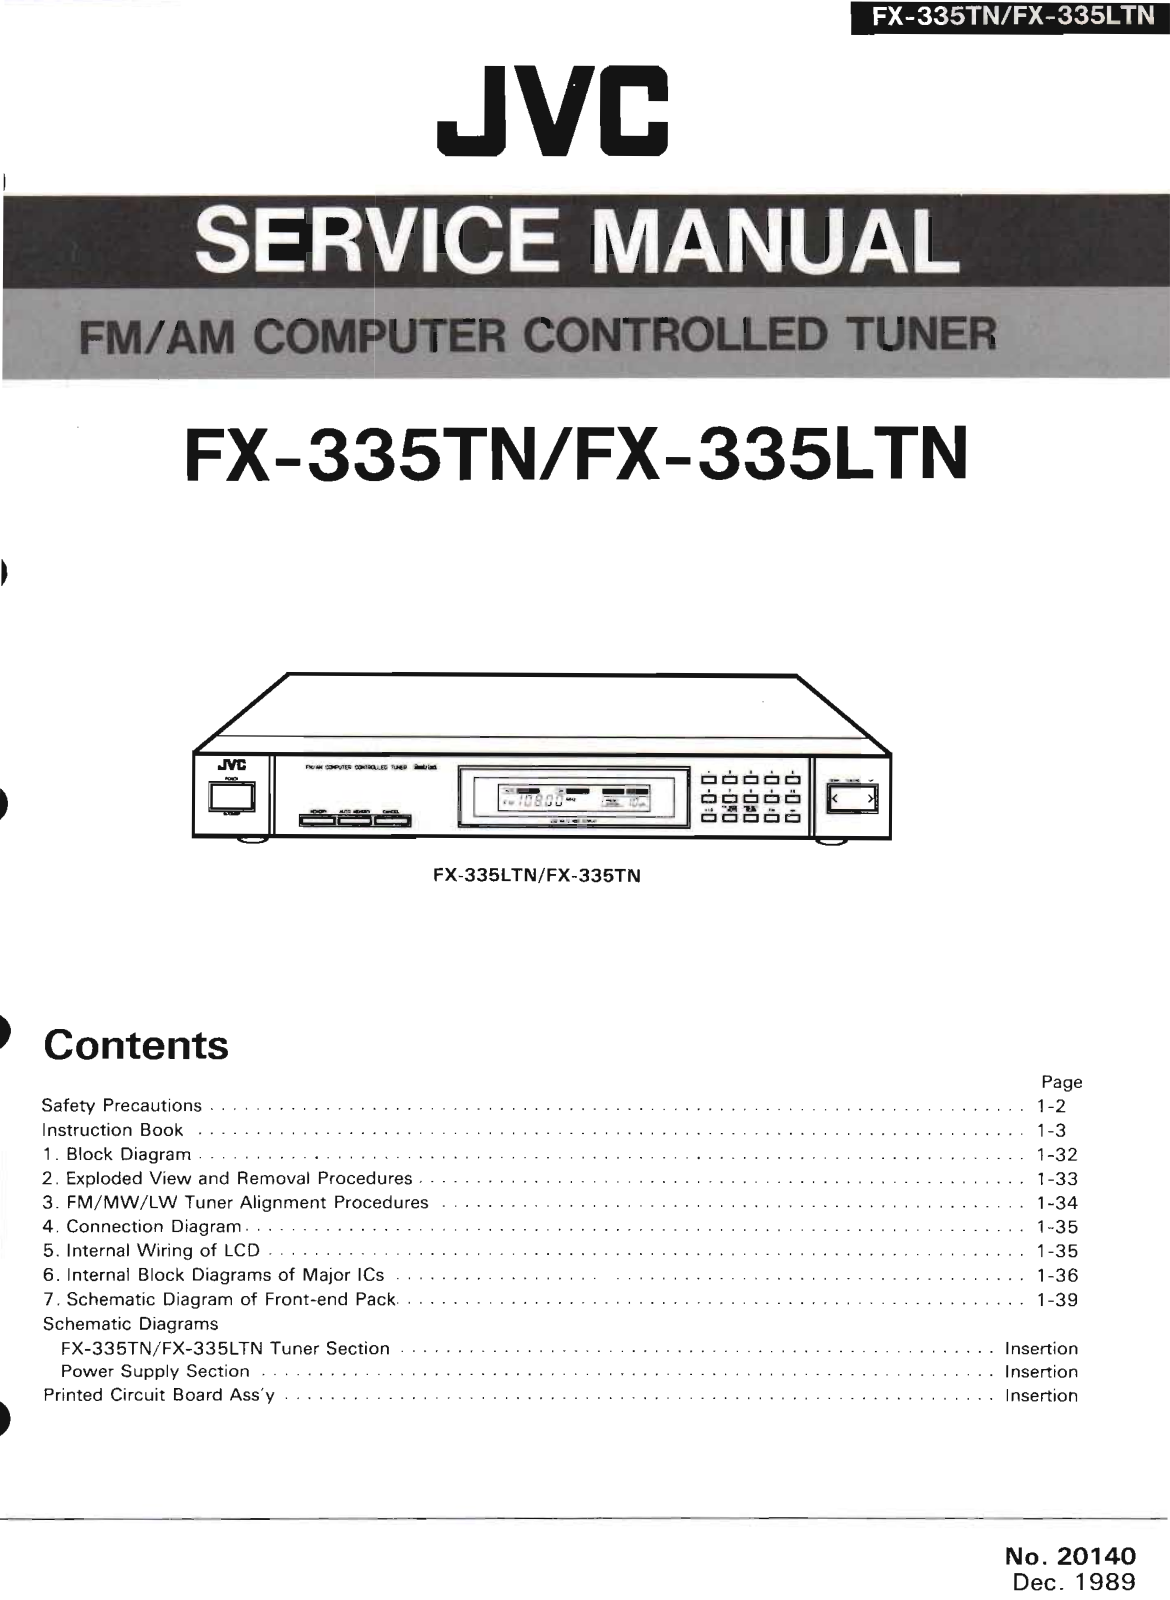 Jvc FX-335-TN Service Manual